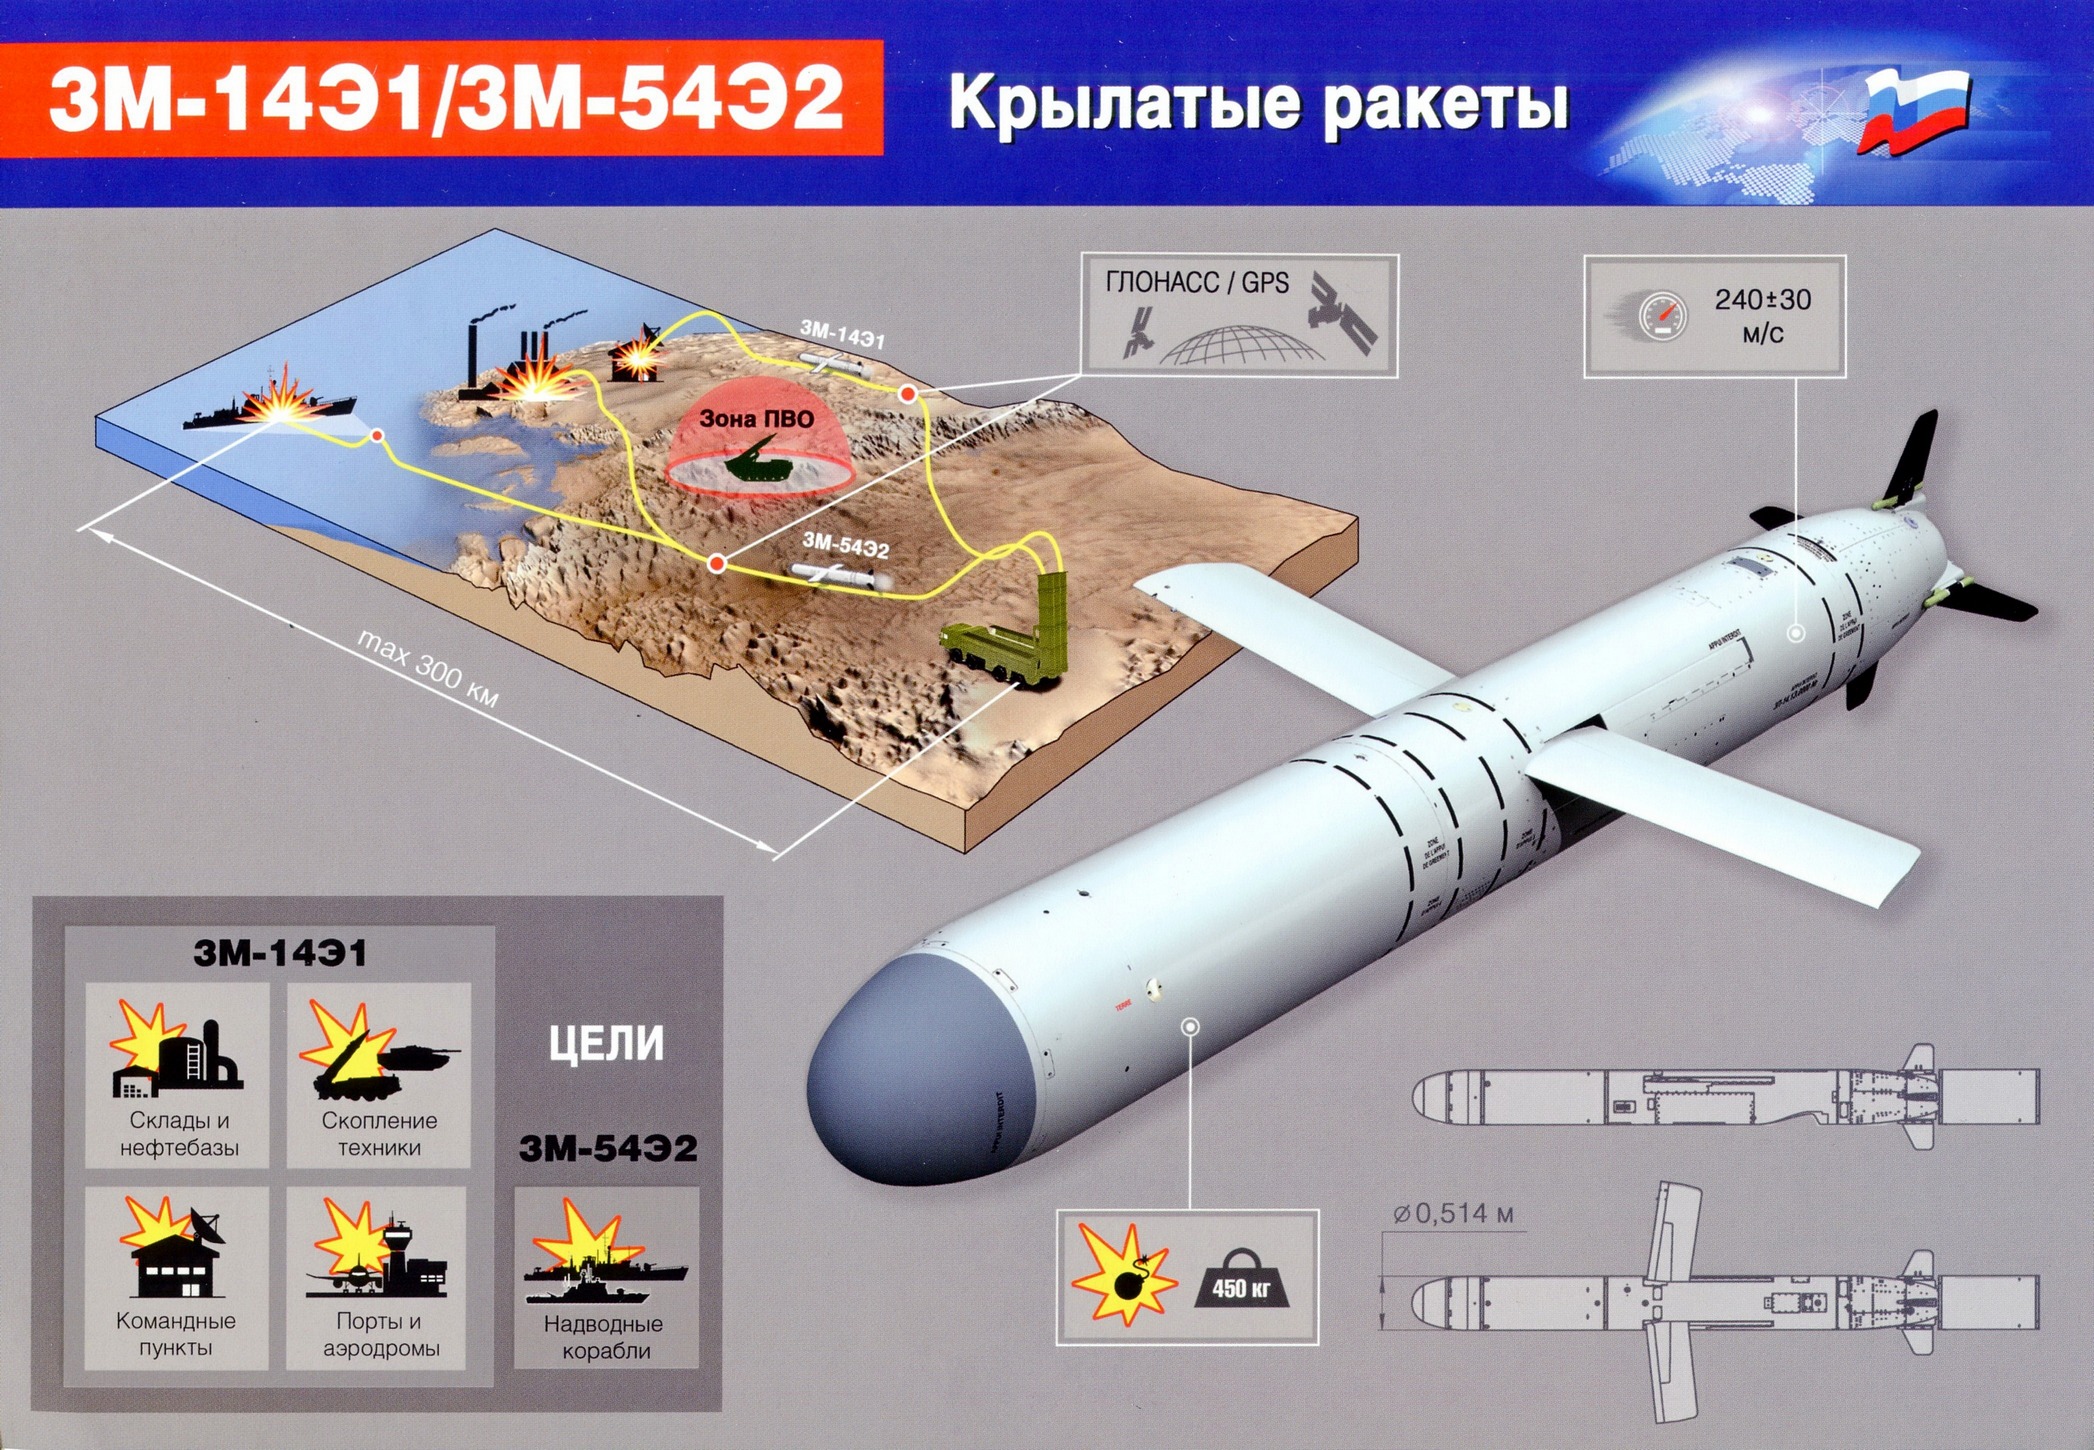 Зенитный ракетный комплекс пво средней дальности с-350 50р6а "витязь"